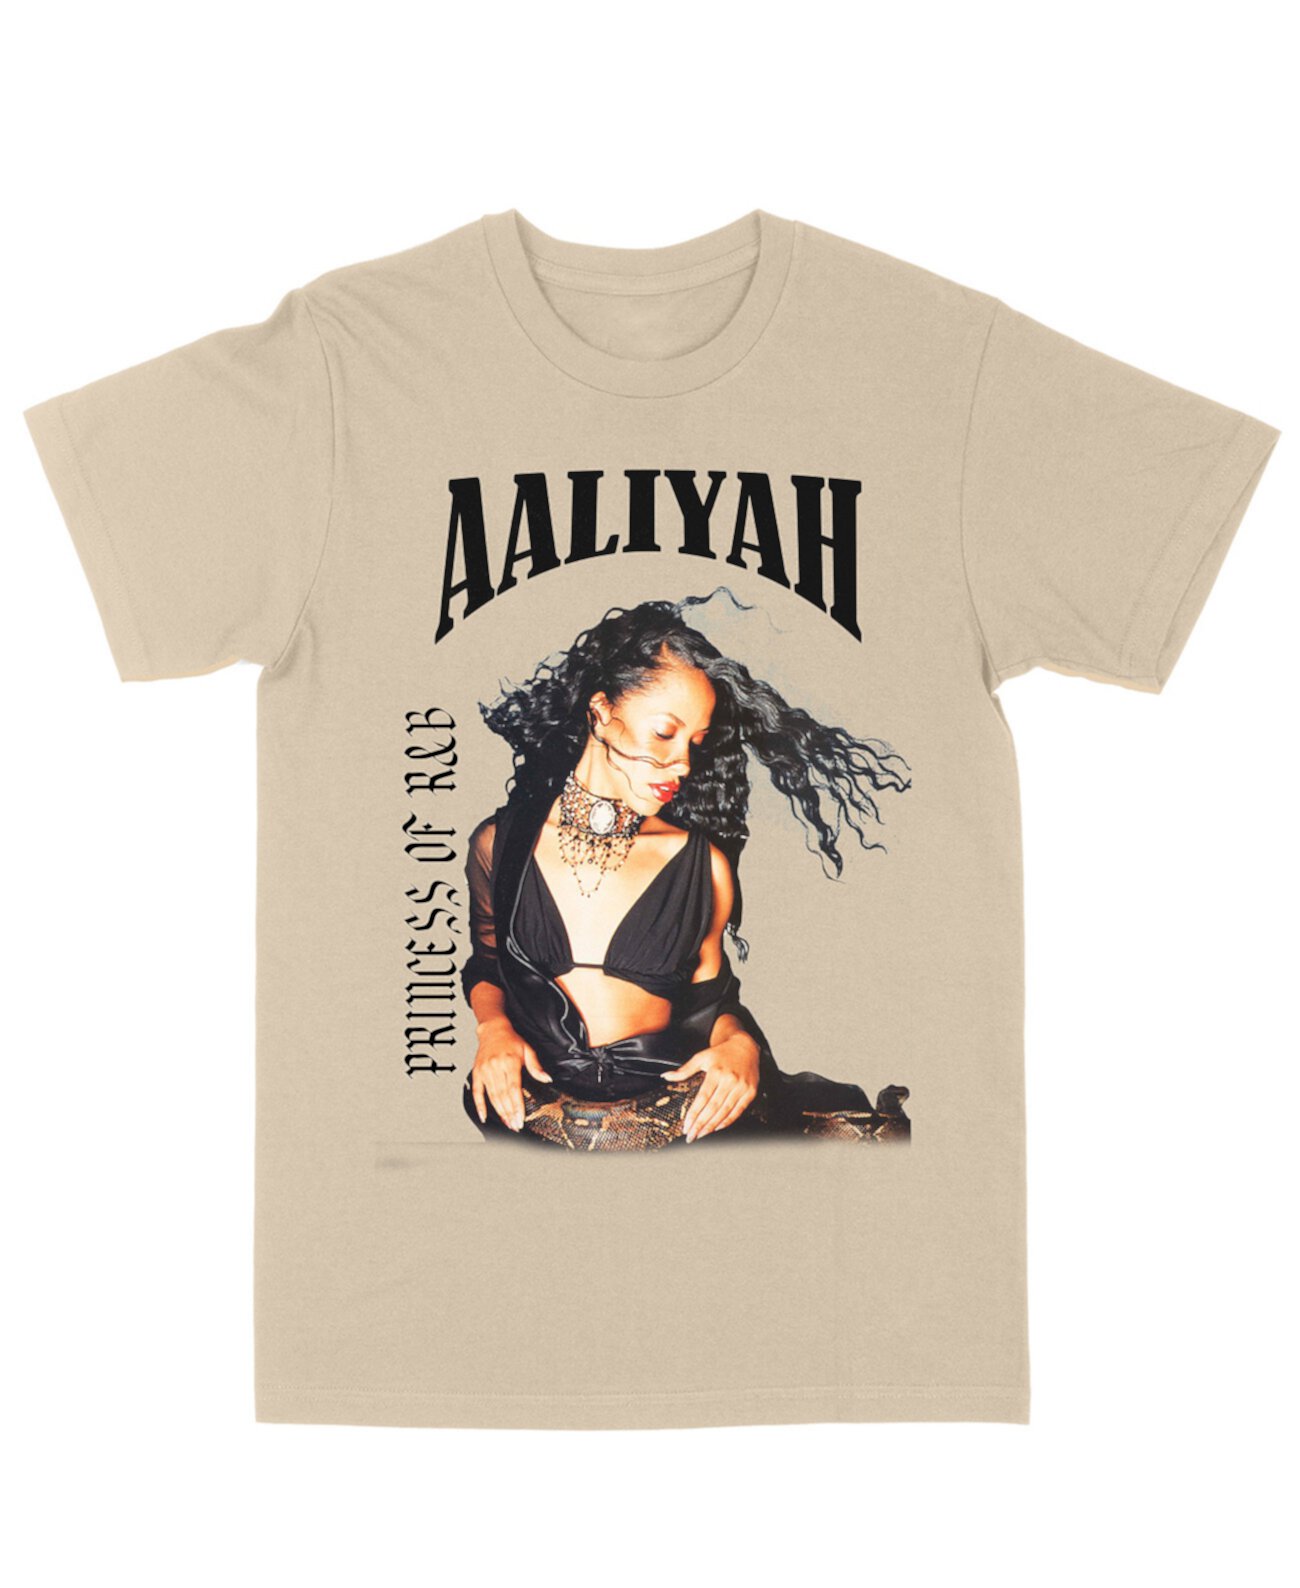 Men's Aaliyah Snake Black Princess of R&B T-shirt Philcos